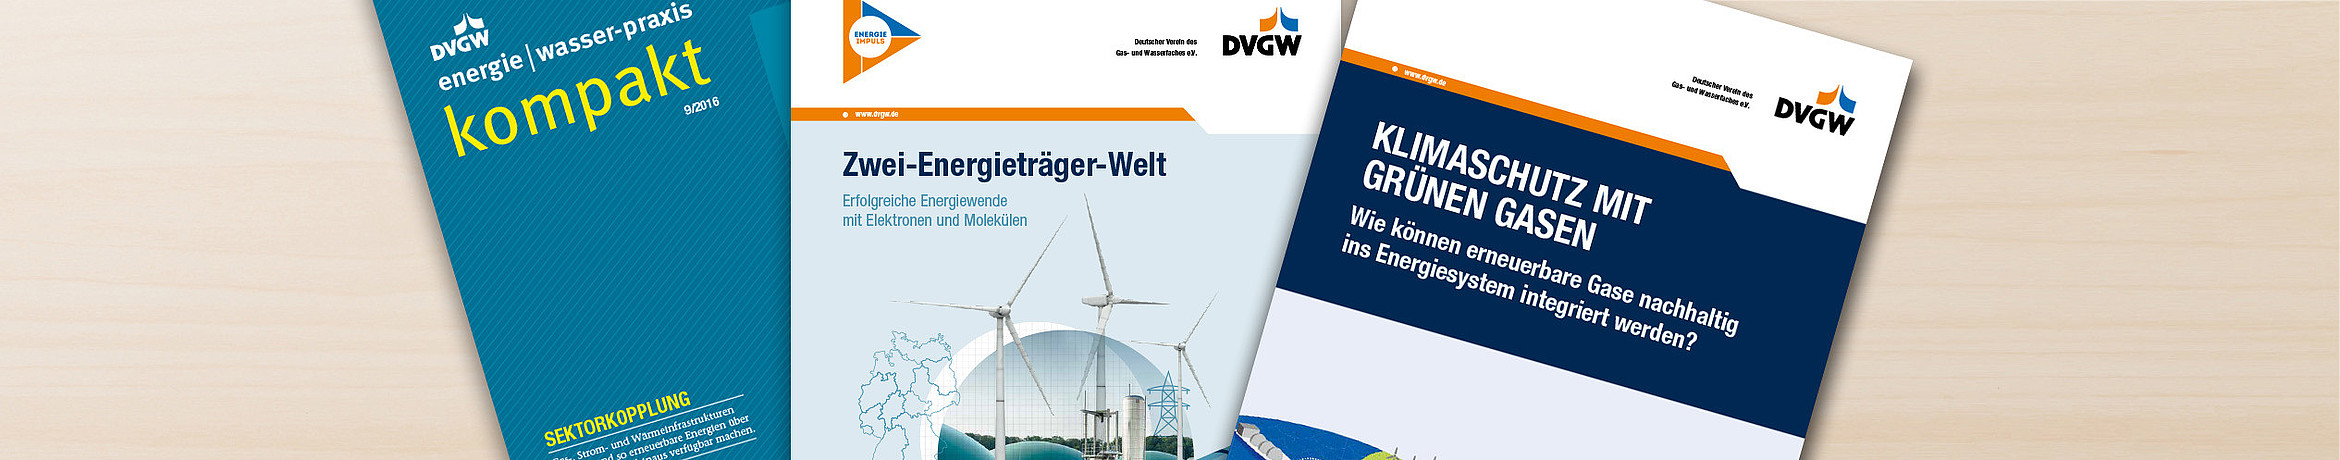 Cover von DVGW-Broschüren zu Gas und Energiewende